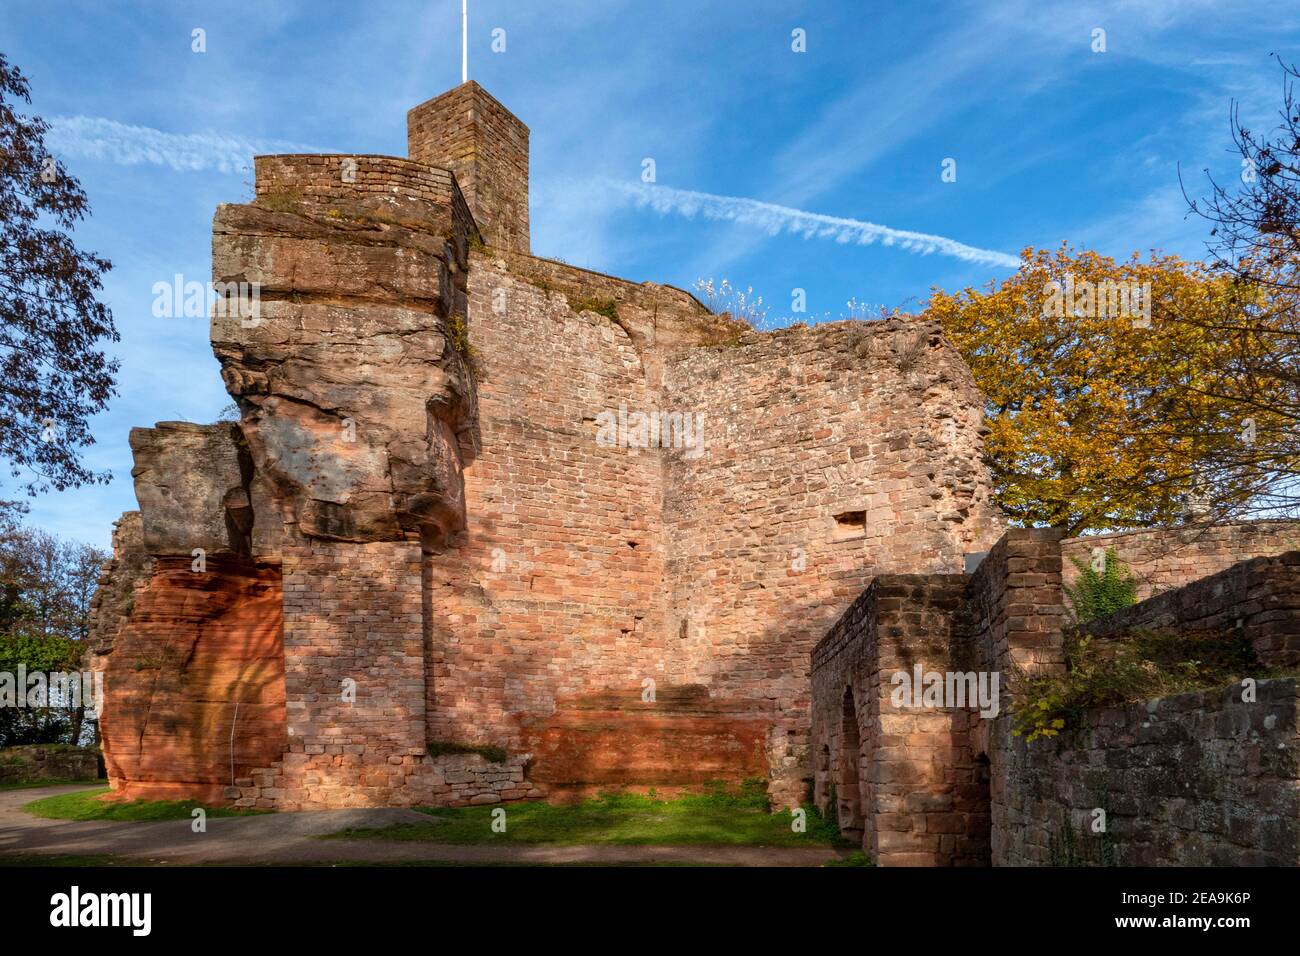 Castle ruin Nanstein near Landstuhl, Palatinate Bergland, Palatinate Forest, Rhineland-Palatinate, Rhineland-Palatinate, Germany Stock Photo